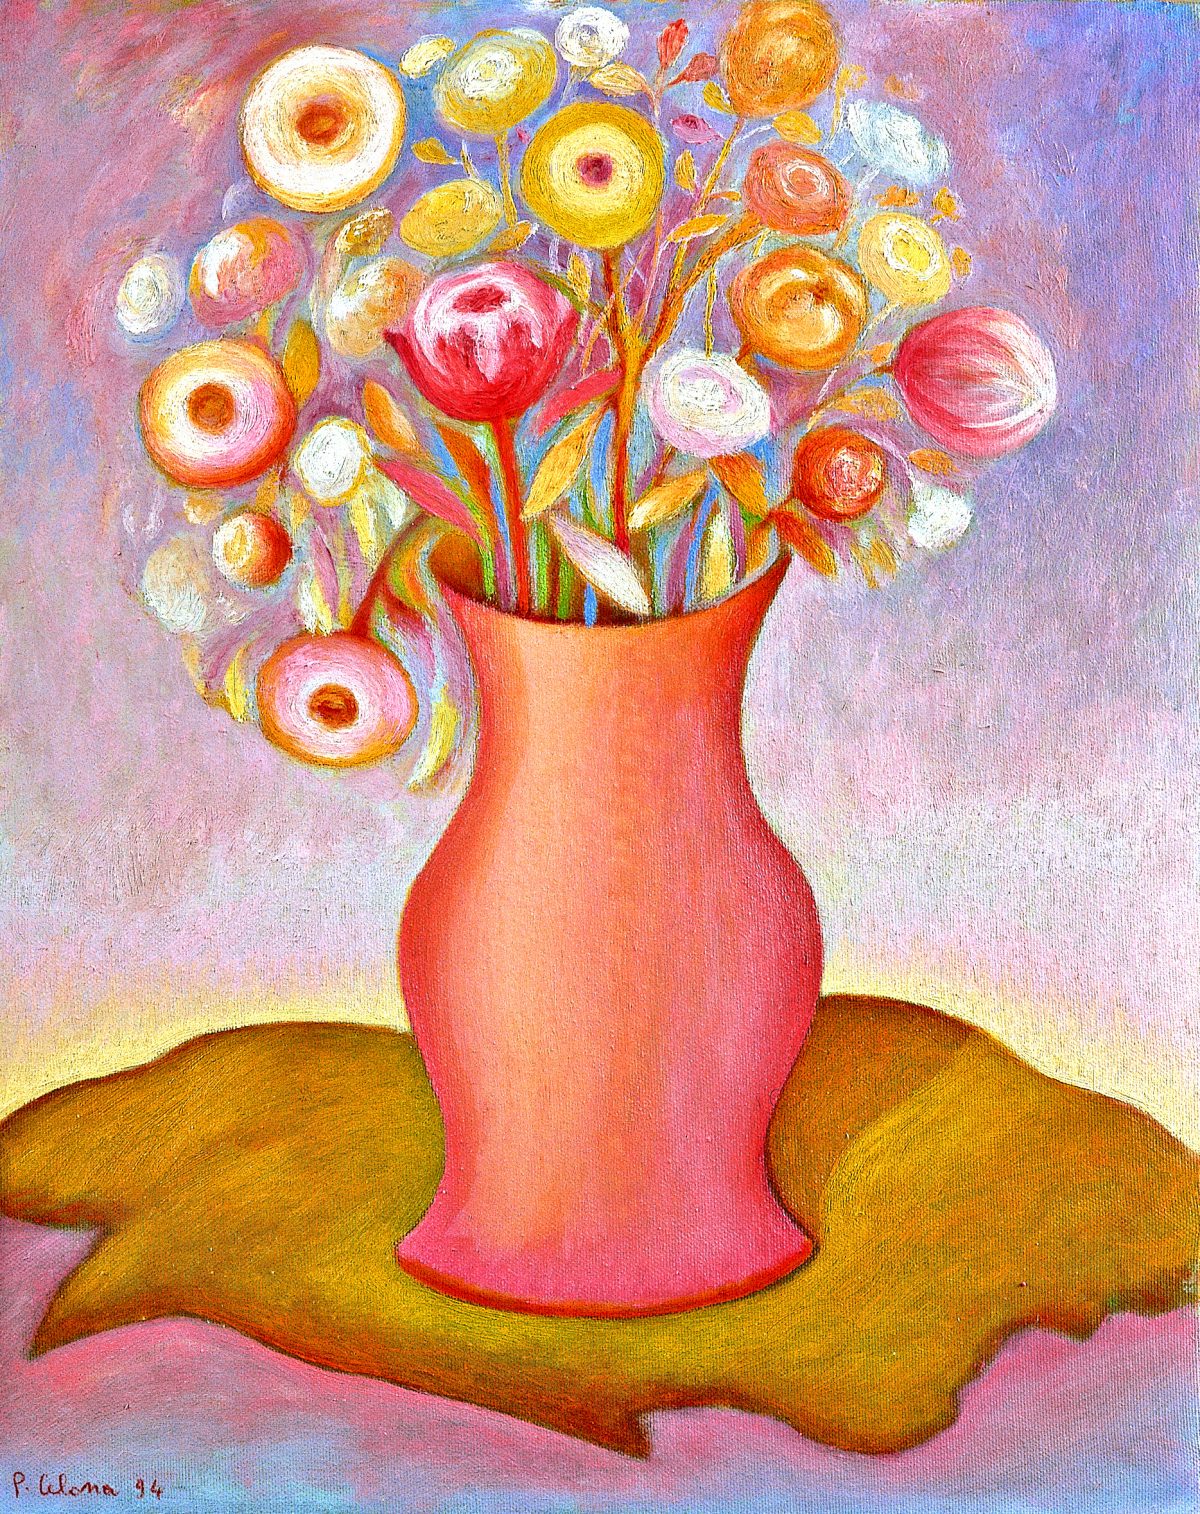 Vaso e fiori, 1994
Olio su tela, 50 x 40 cm,
Collezione privata,
NMV112